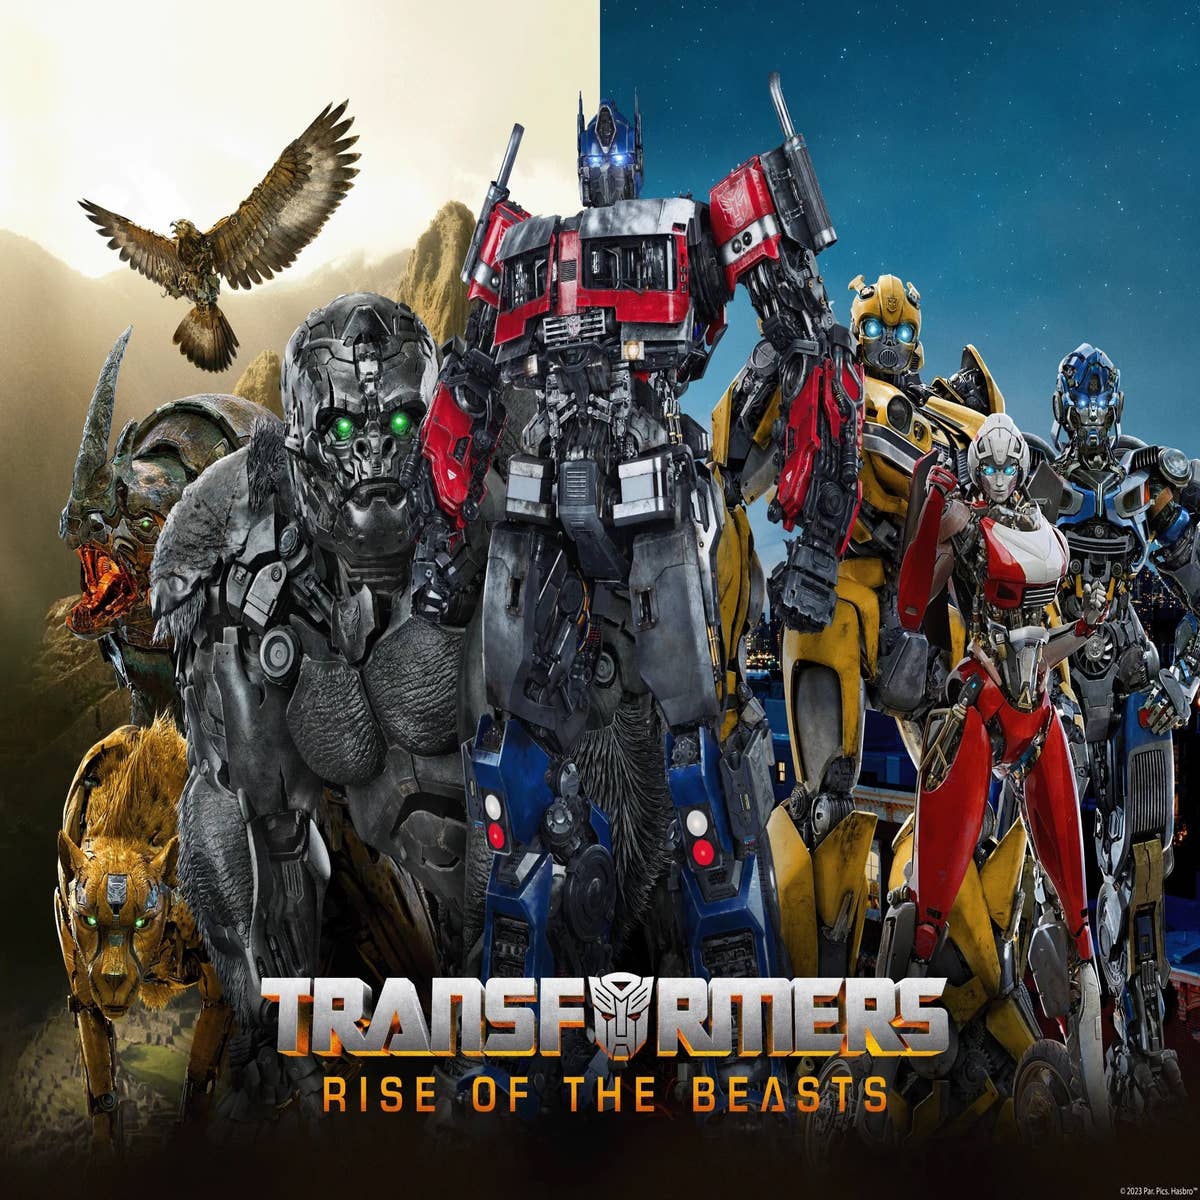 Transformers World: Análise sobre o filme de Transformers ROTF.